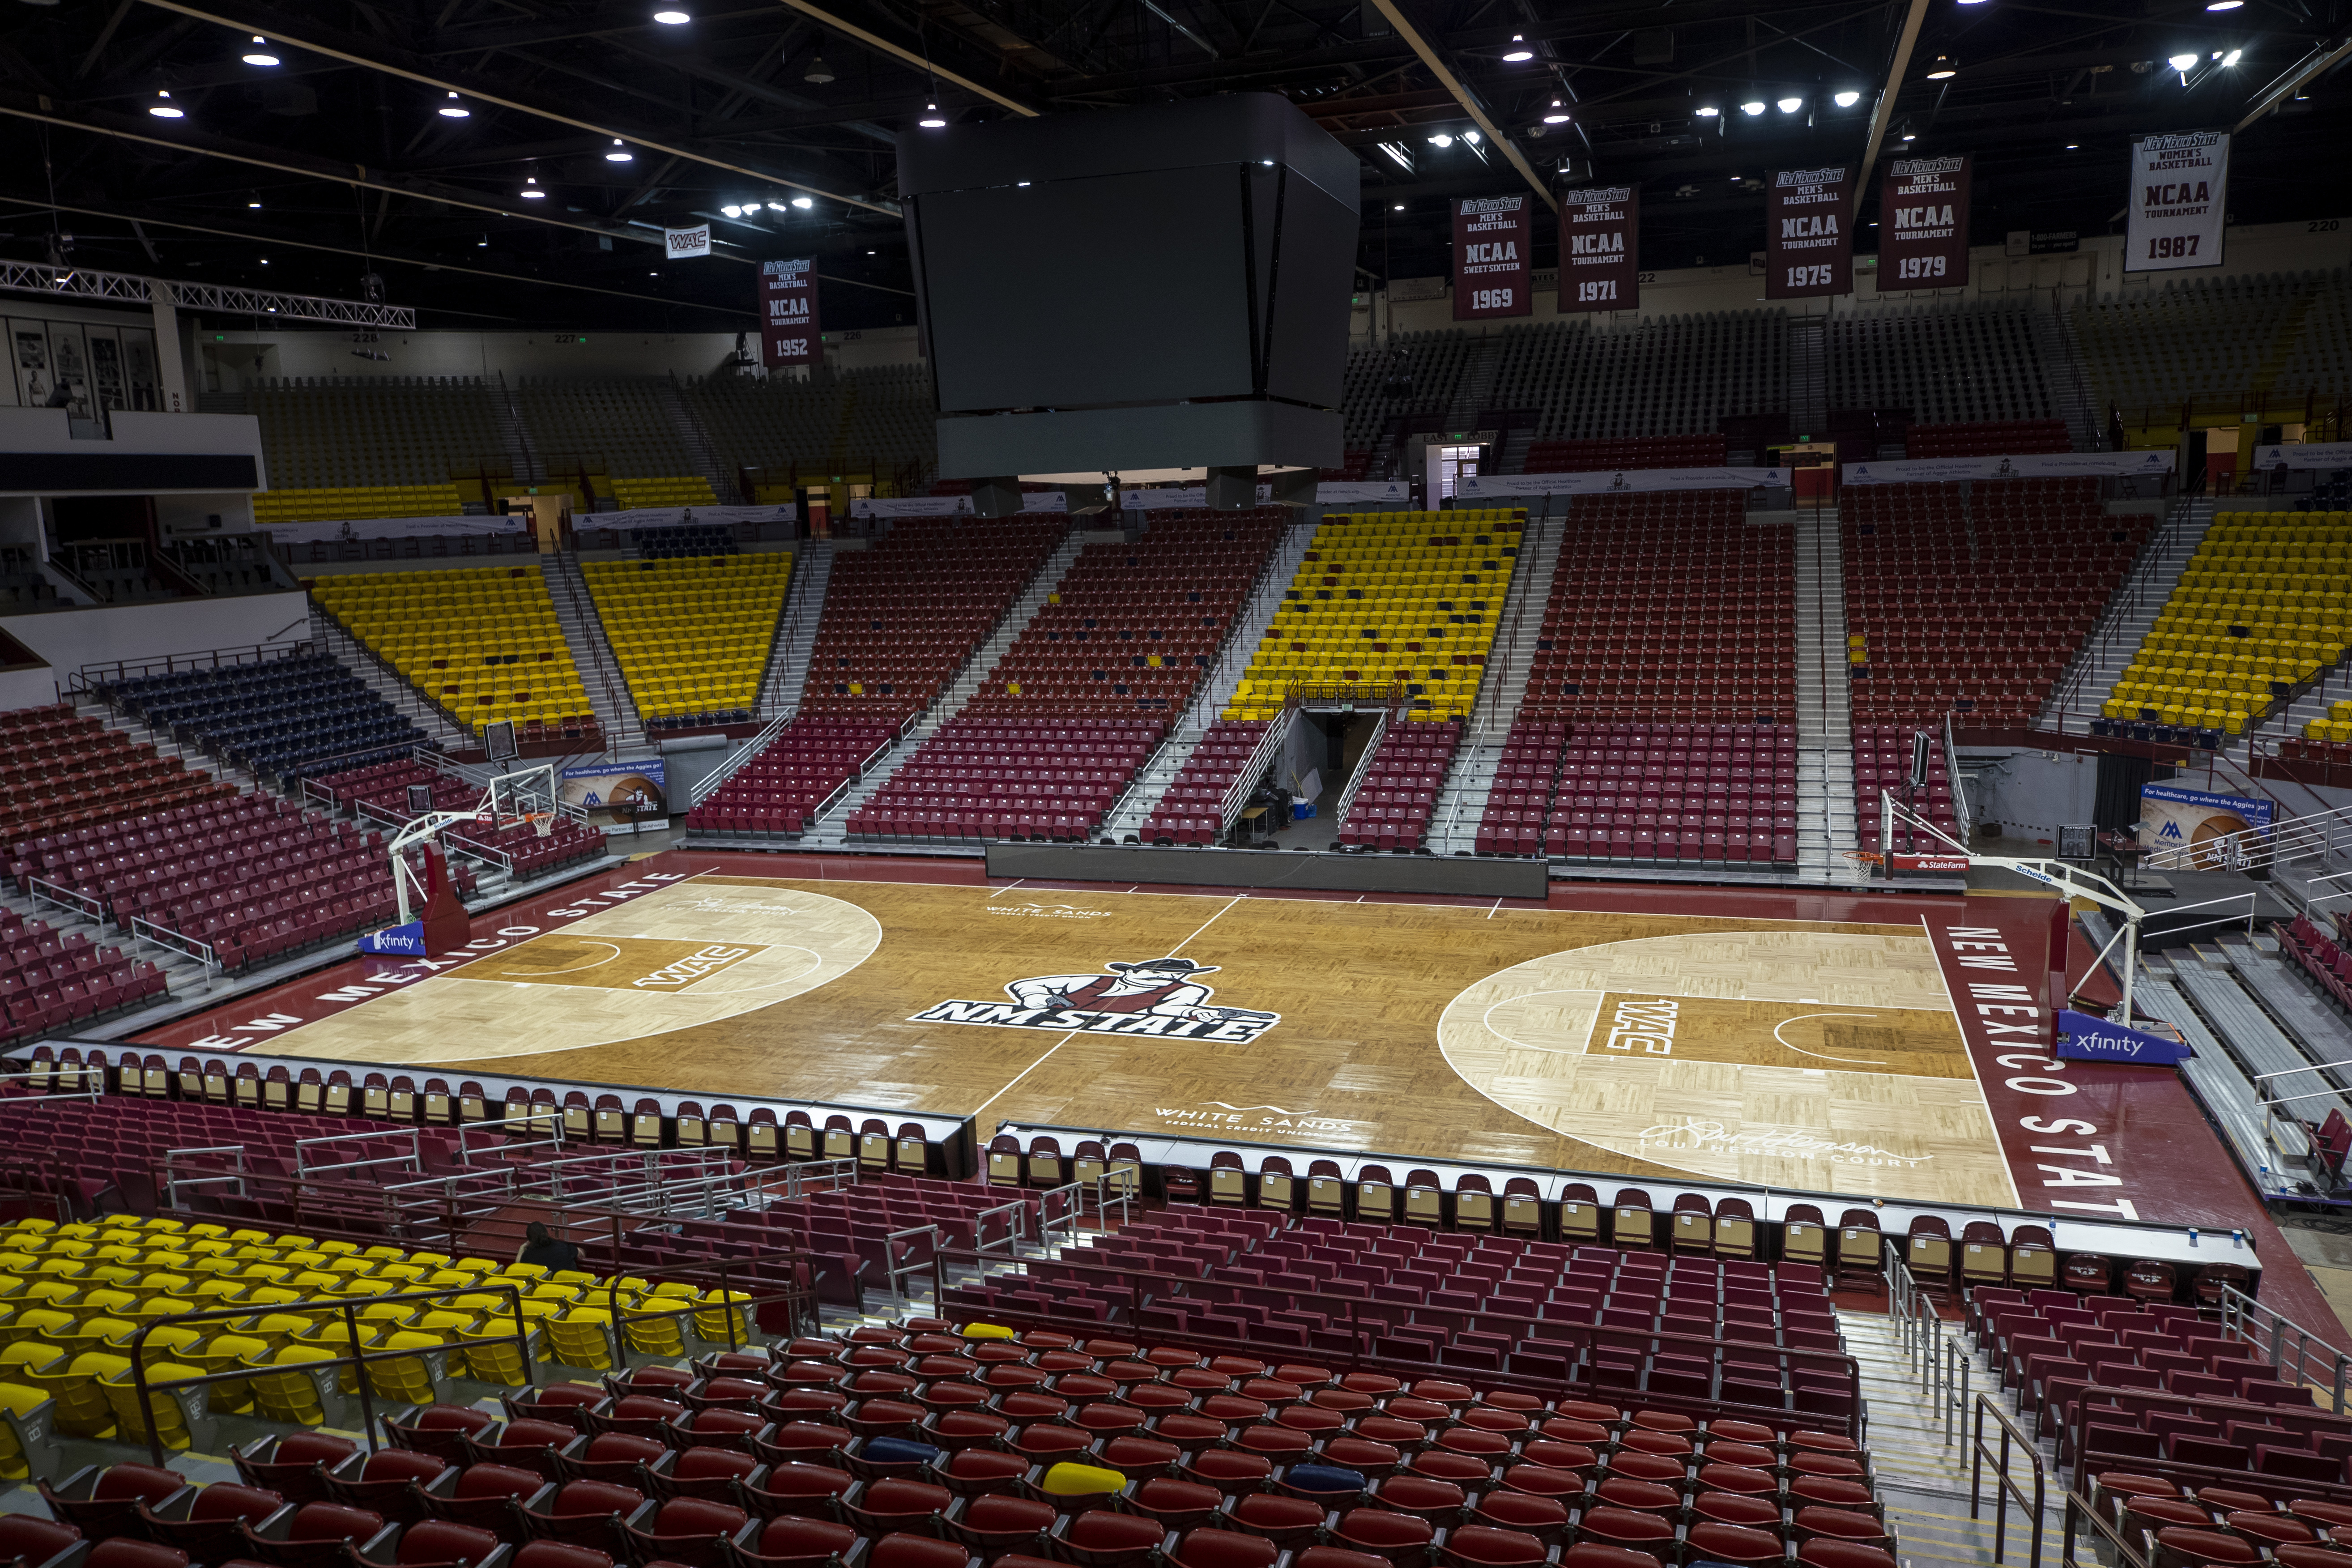 Basketball Courts  Sport Court Southwest - Texas, New Mexico, Oklahoma